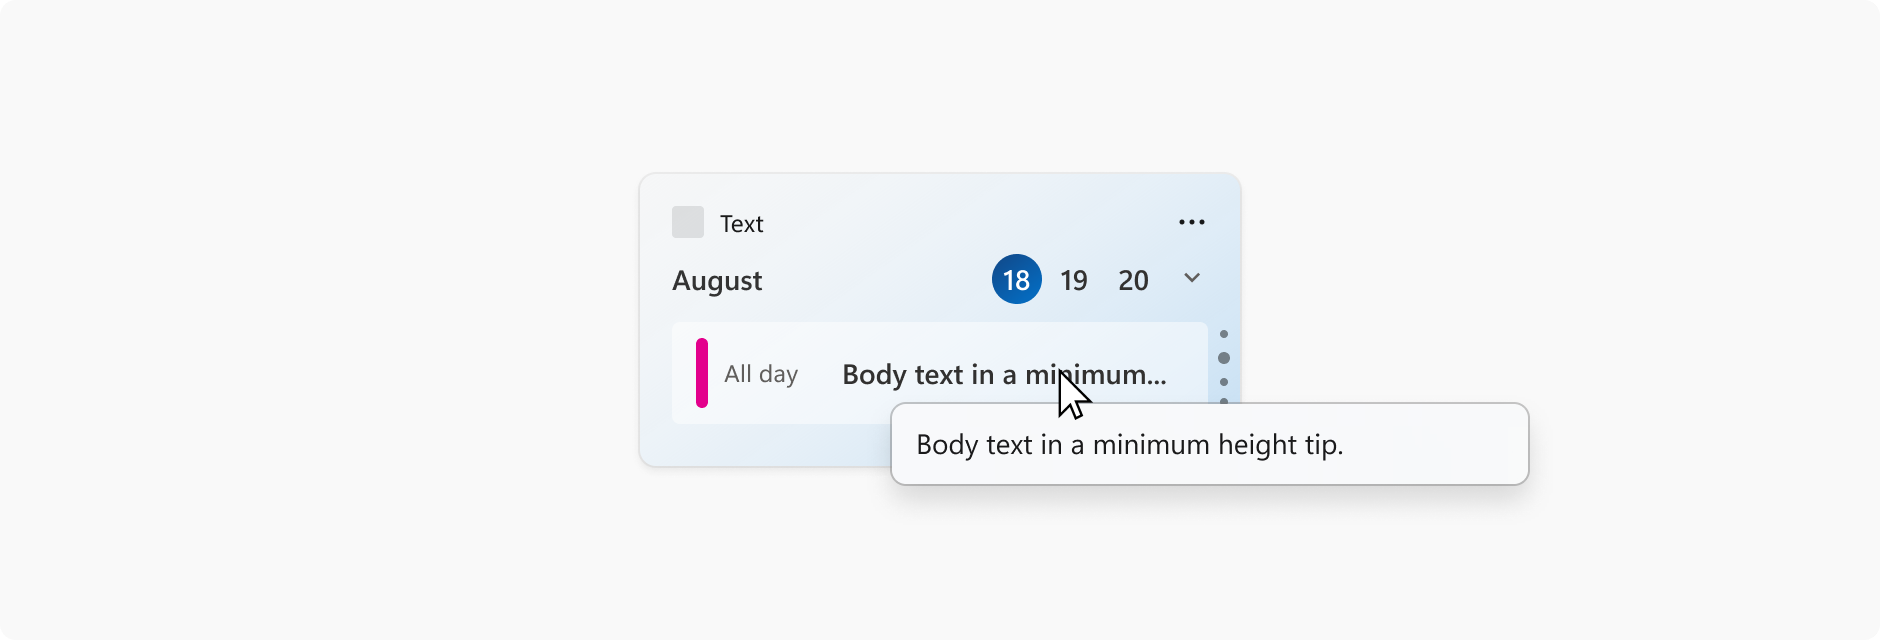 一張日曆小工具的圖像，顯示了一個日曆約會。滑鼠游標懸停在約會主題行上，該行被截斷，並顯示工具提示顯示完整主題行。